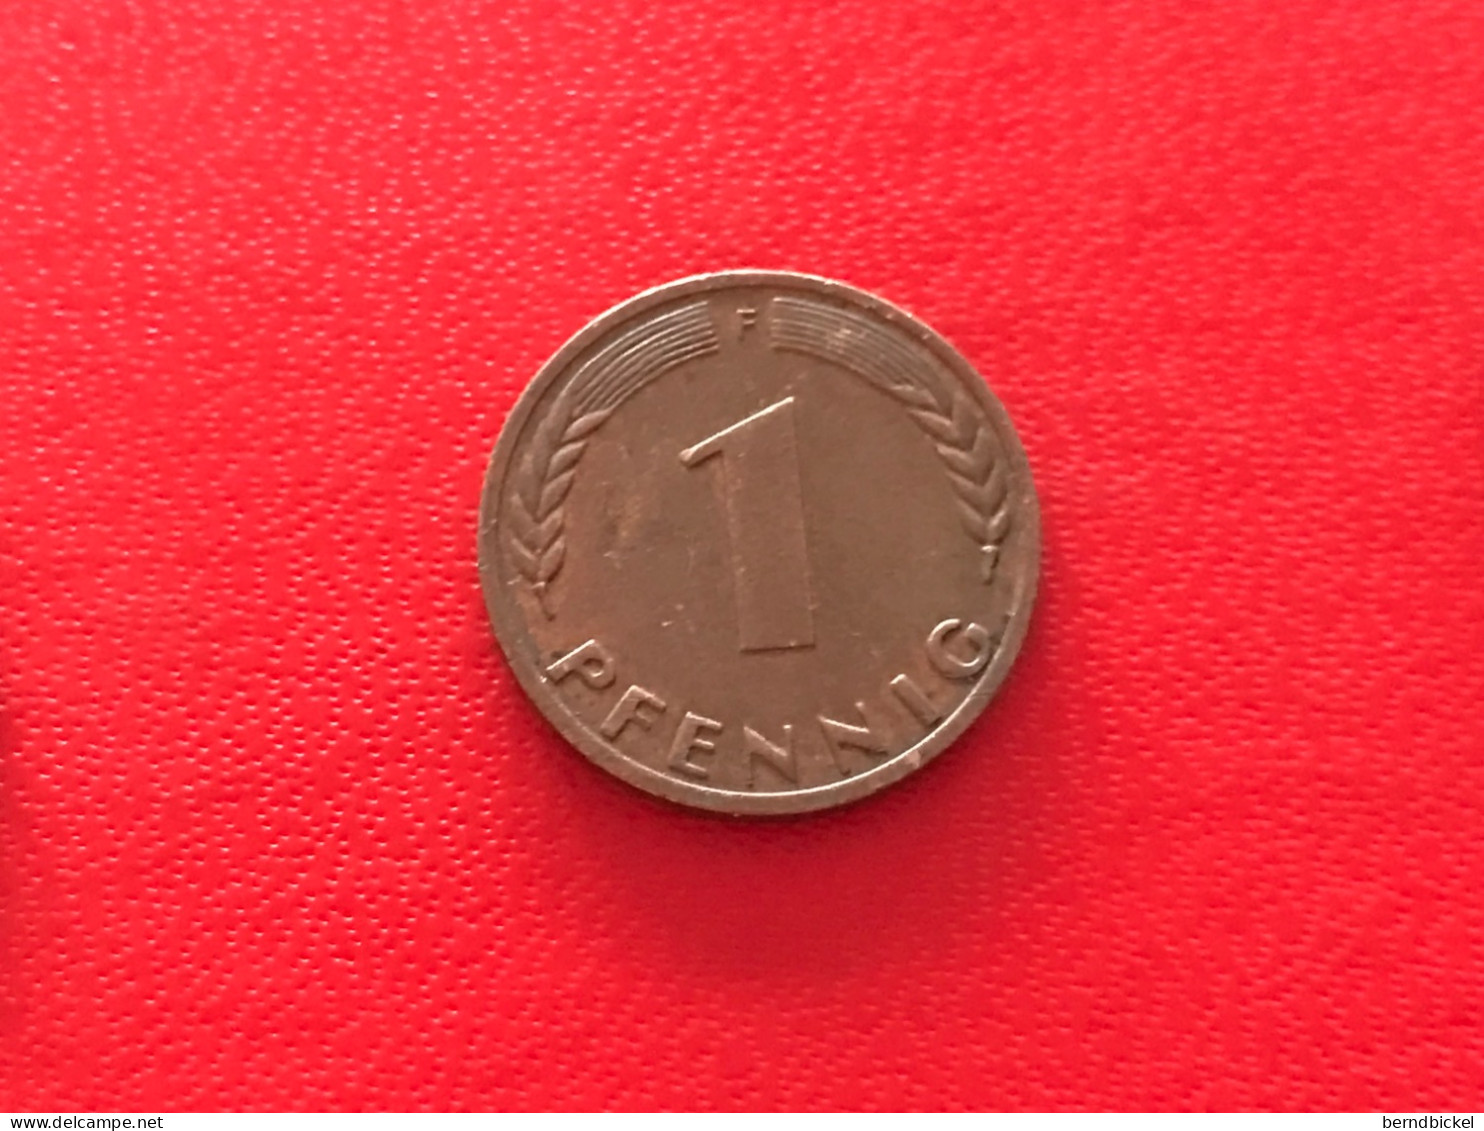 Münze Münzen Umlaufmünze Deutschland 1 Pfennig 1972 Münzzeichen F - 1 Pfennig